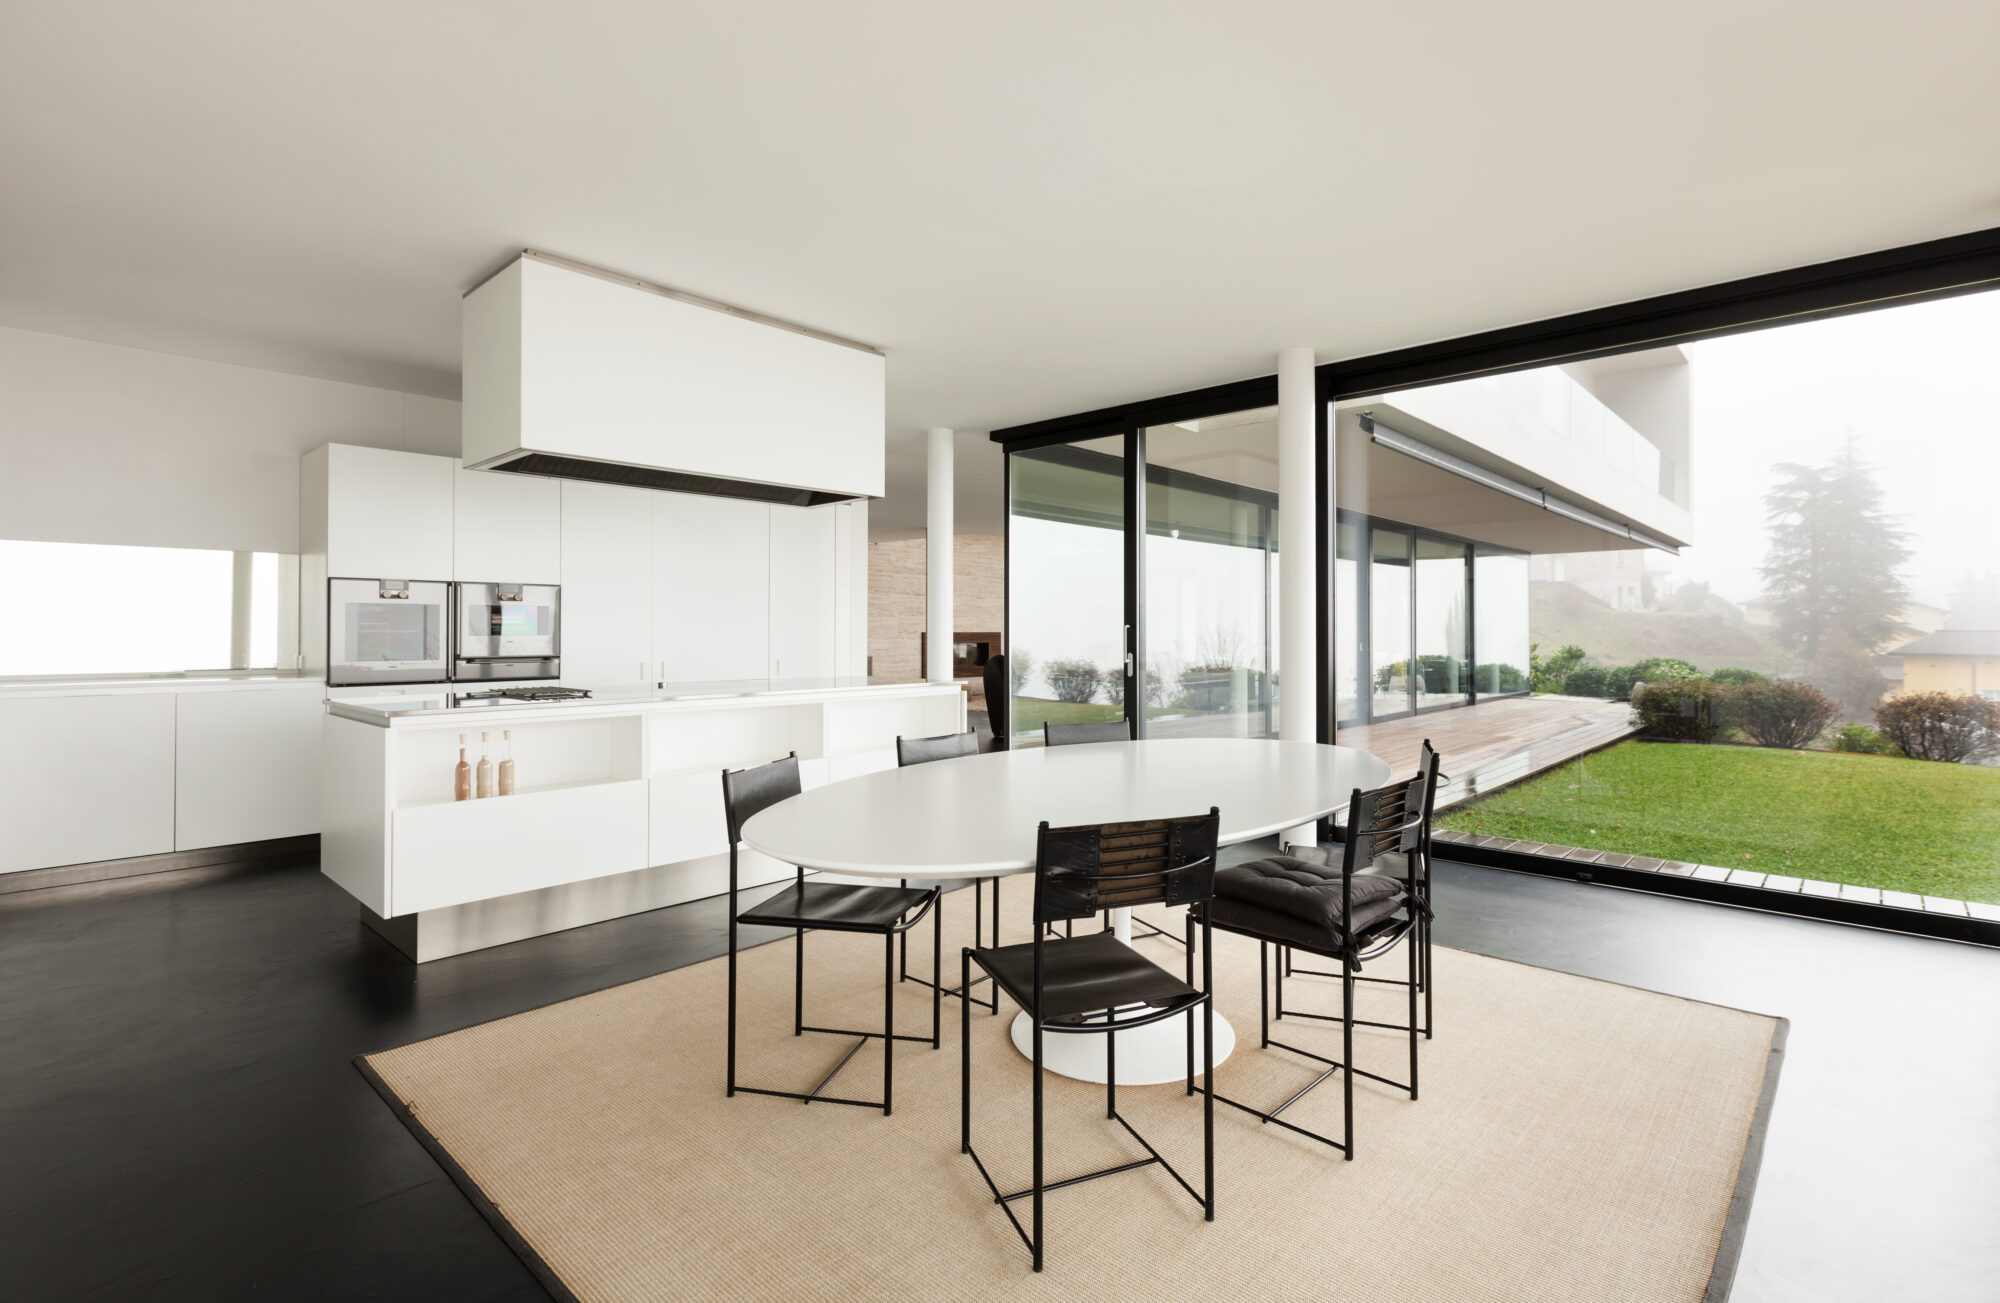 beautiful interior of a modern villa, domestic kitchen